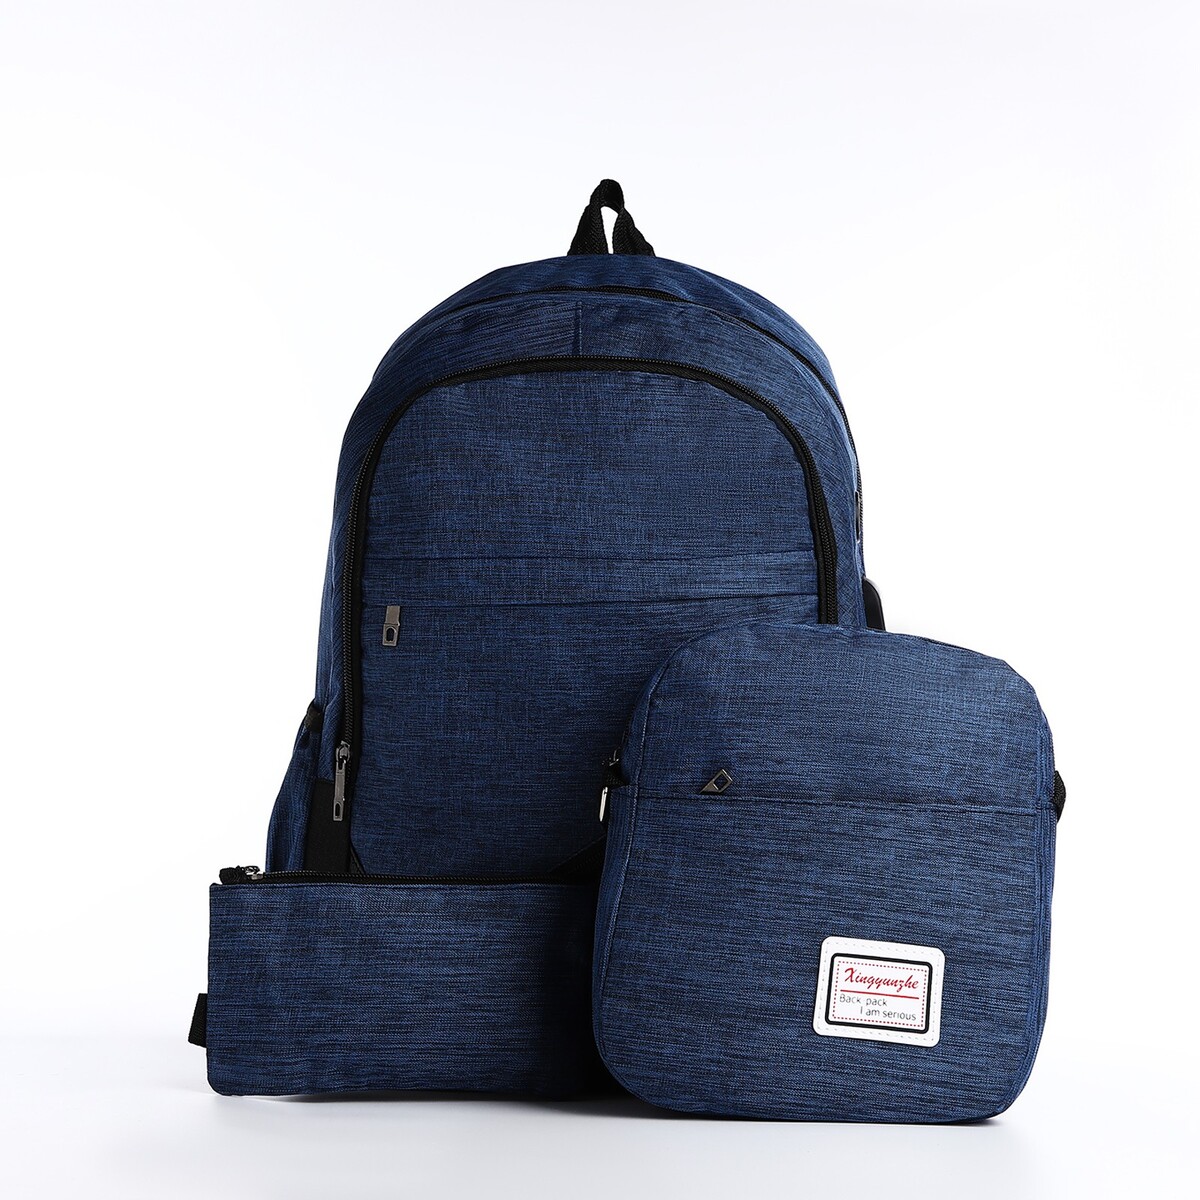 Рюкзак на молнии, с usb, 4 наружных кармана, сумка, пенал, цвет синий рюкзак туристический на молнии 4 наружных кармана синий